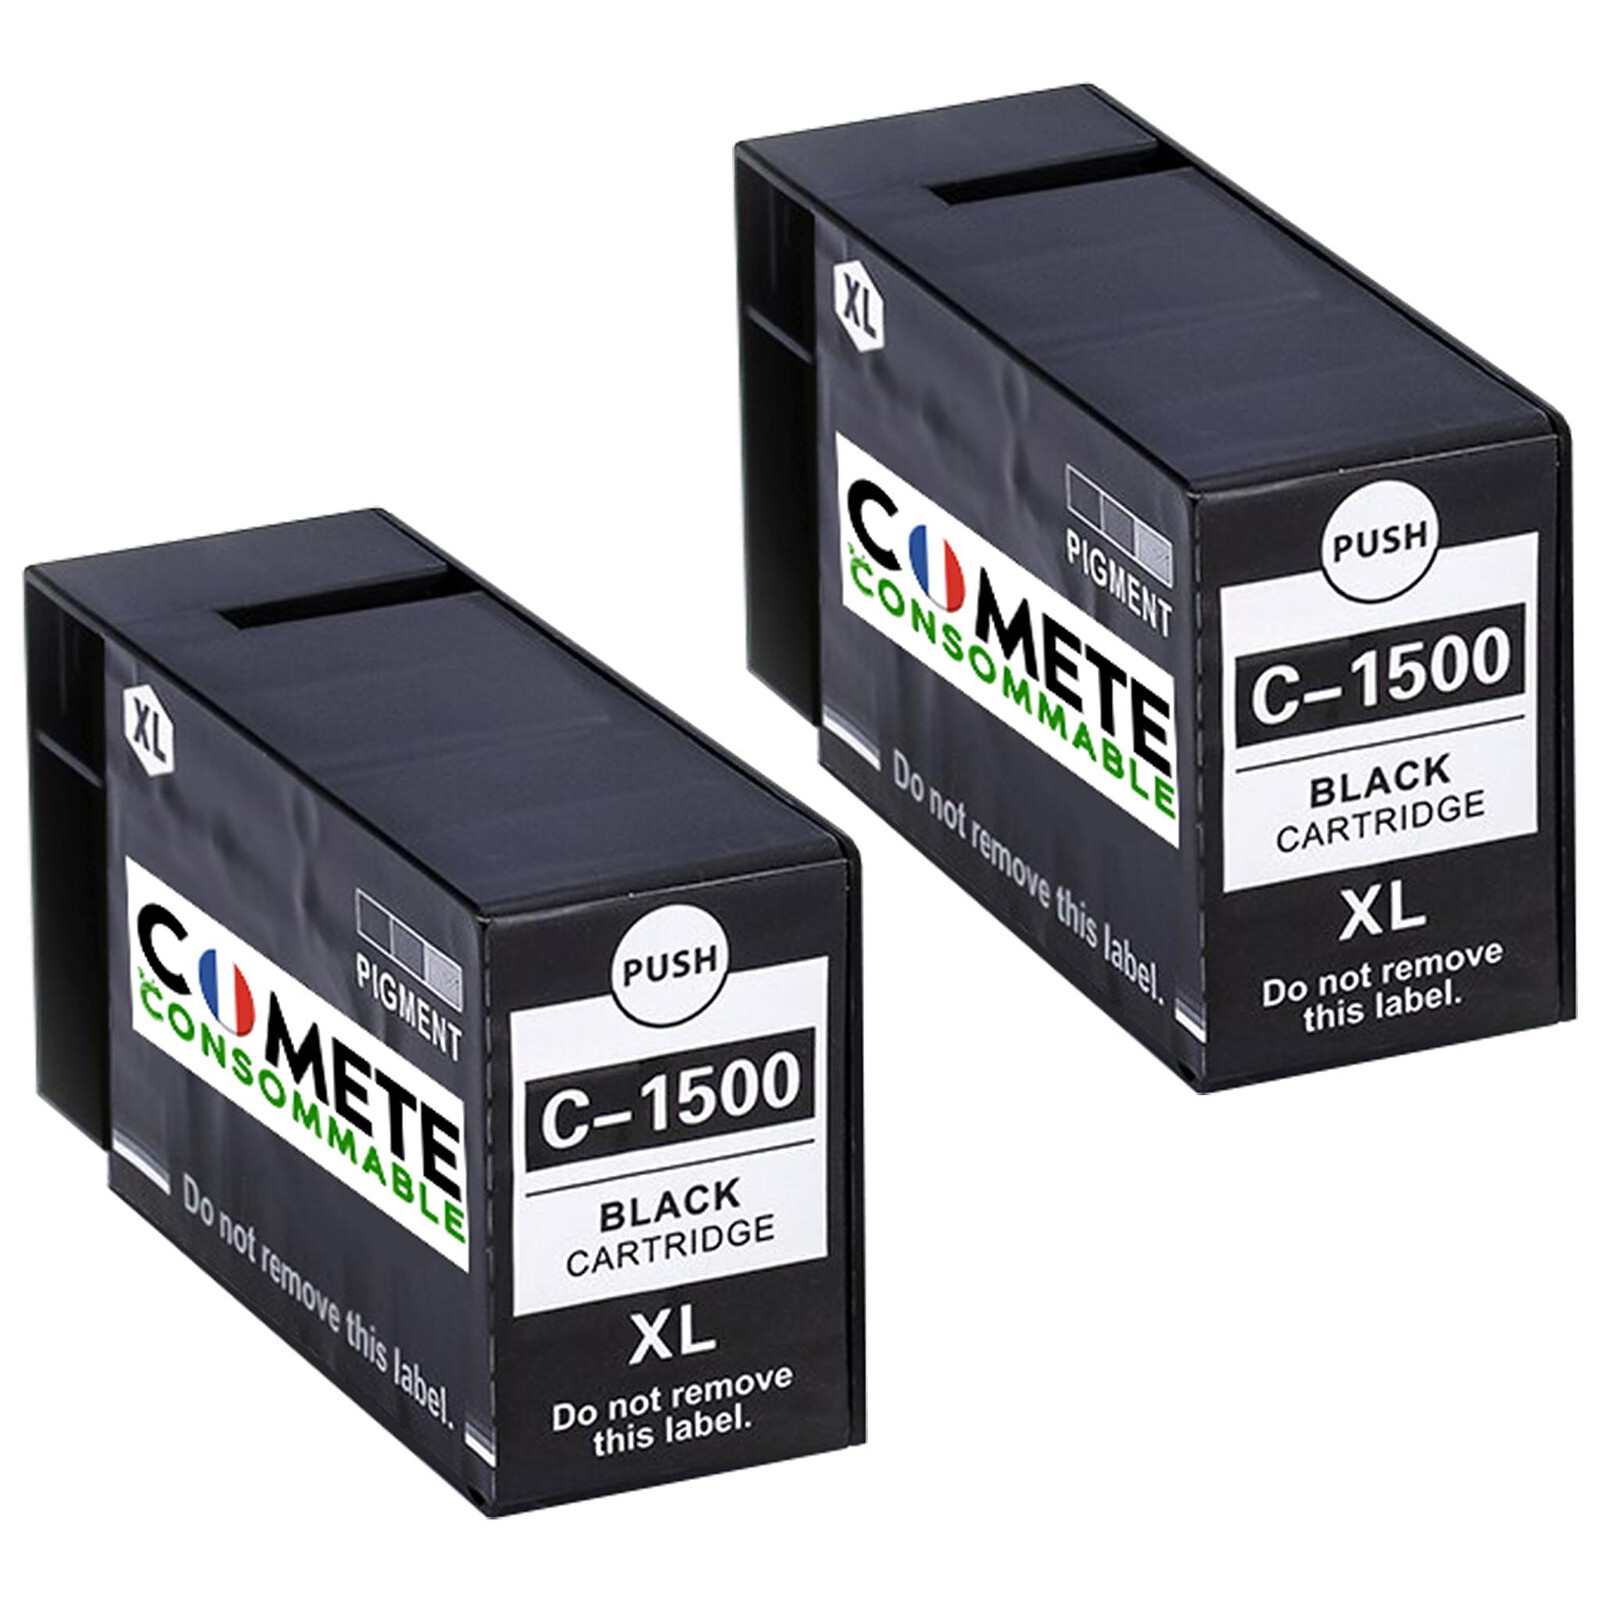 COMETE - 540 XL - 1 cartouche 540XL compatible CANON PG-540 pour Imprimante  Canon PIXMA - Marque française - Cartouche imprimante - LDLC